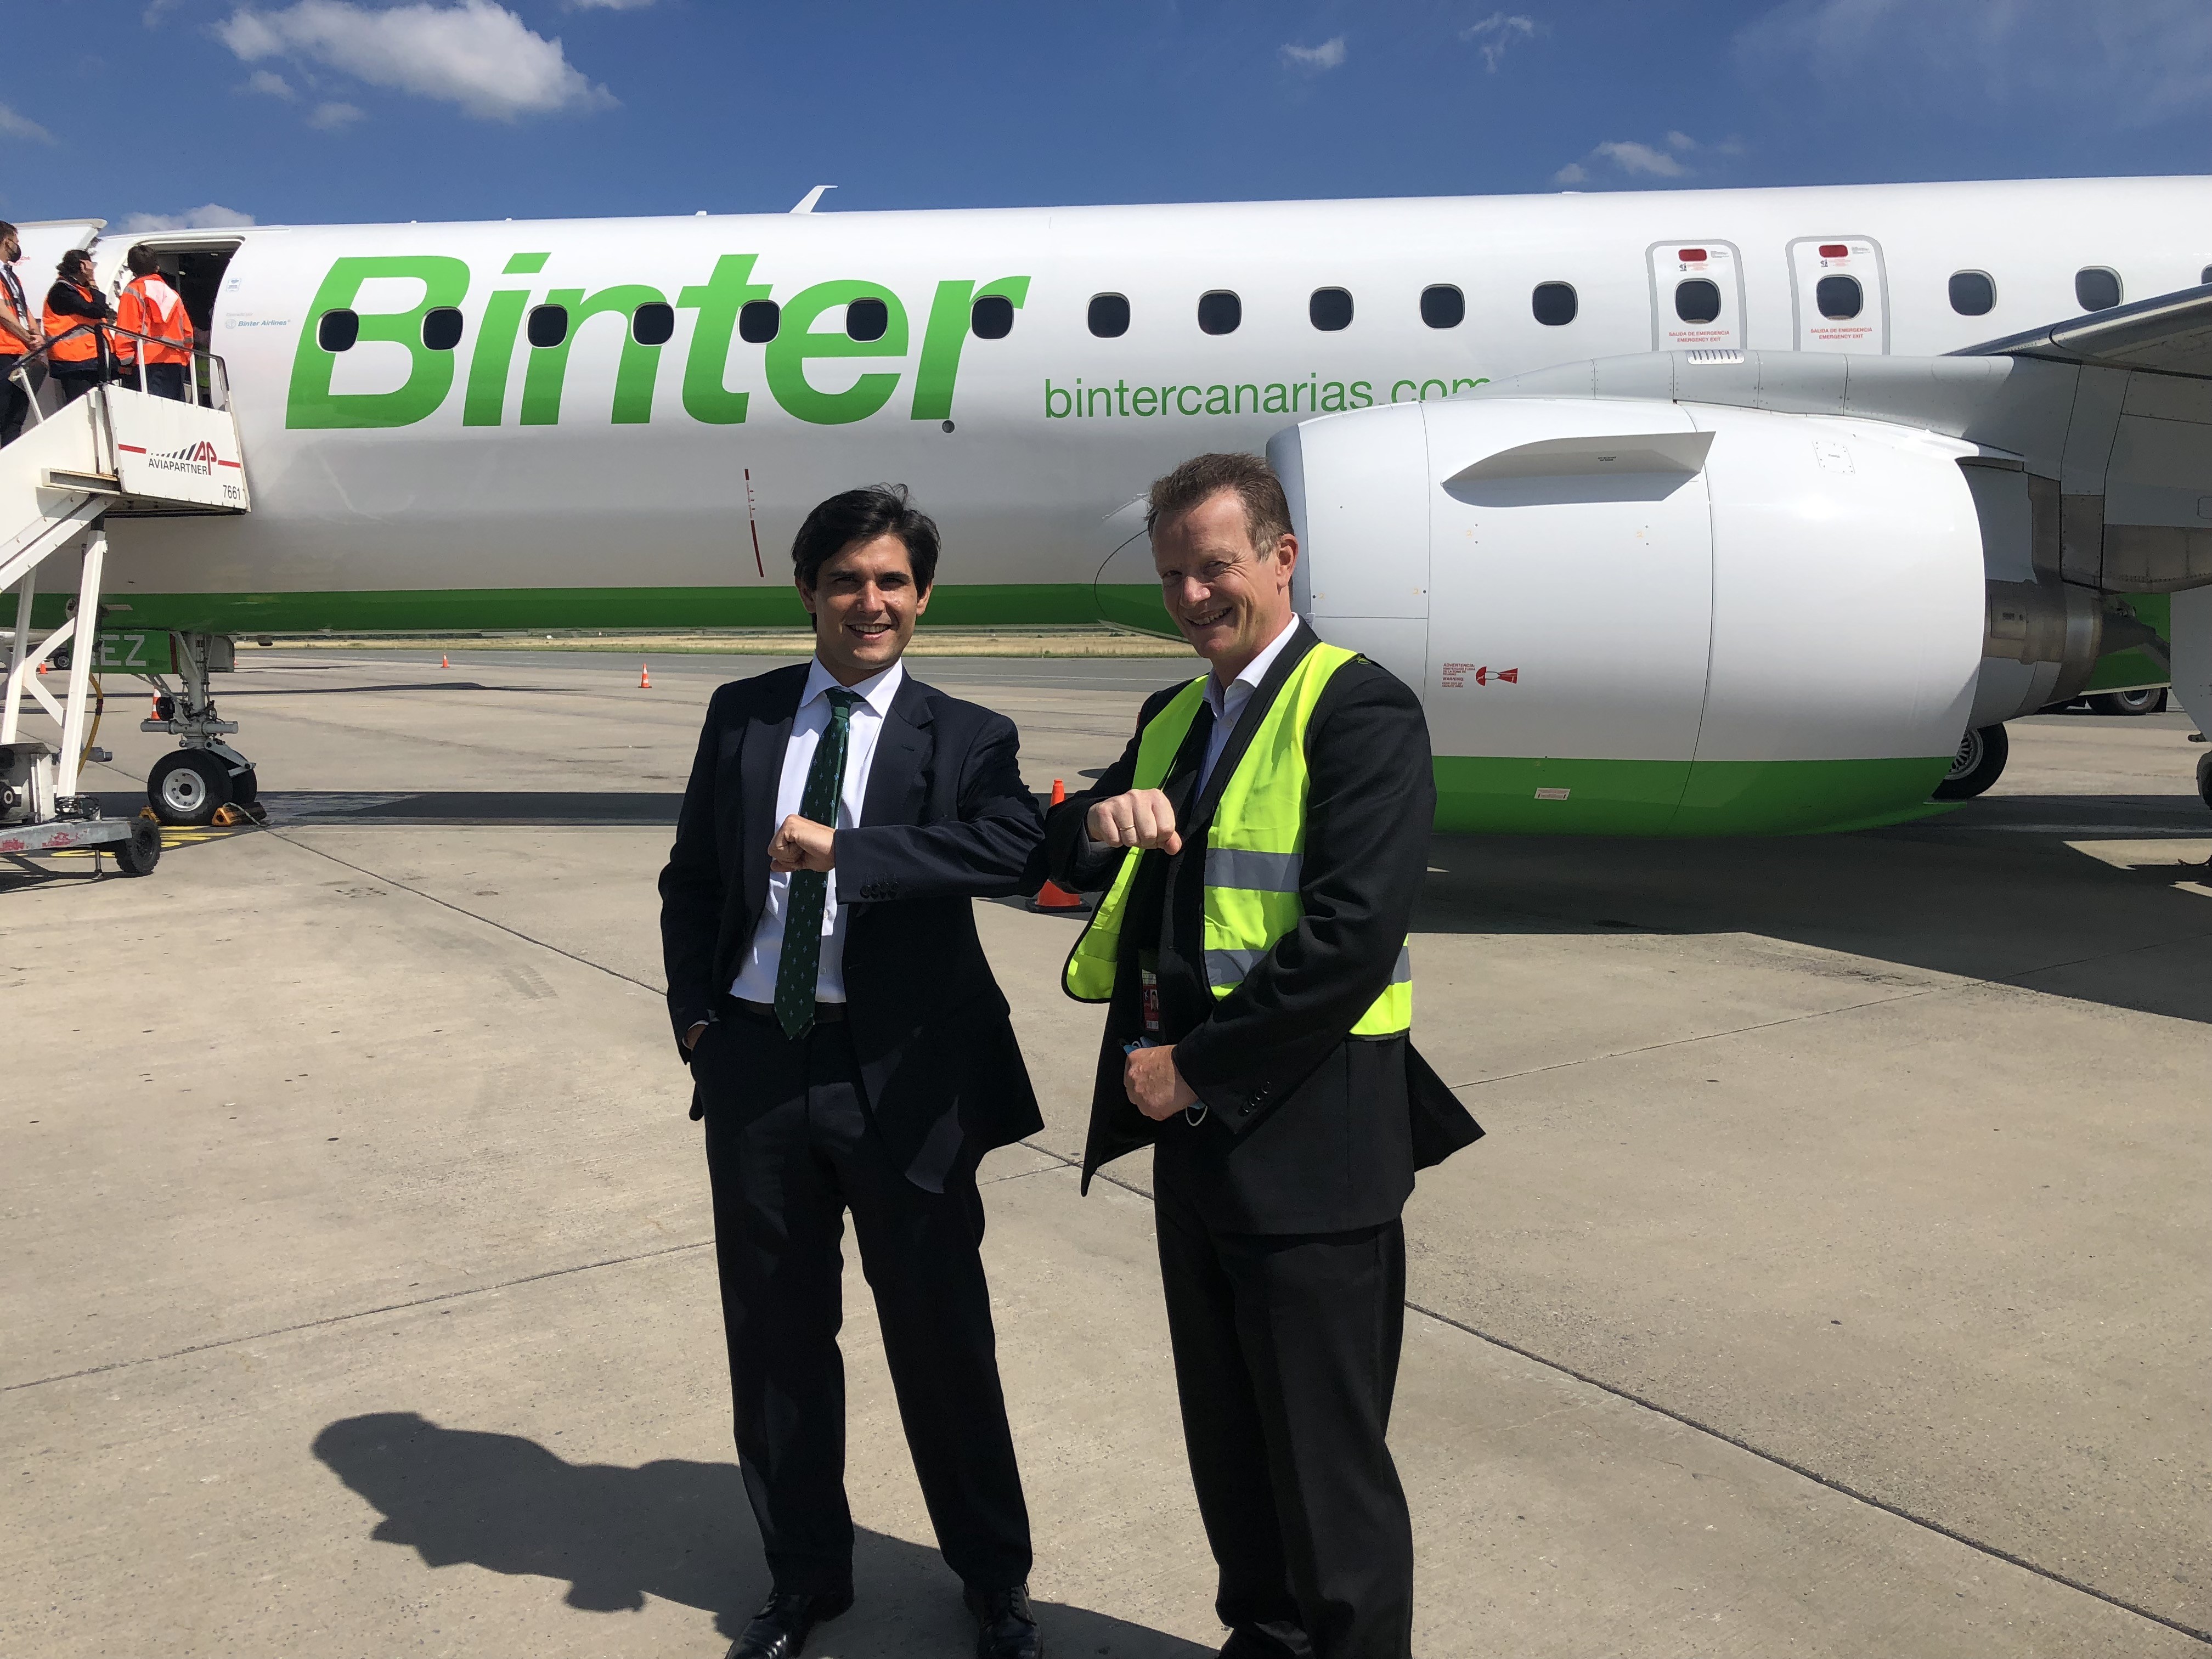 Fernando Morales, responsable de la compagnie Binter, au côté de Marc-André Gennart, directeur général de l'aéroport lillois